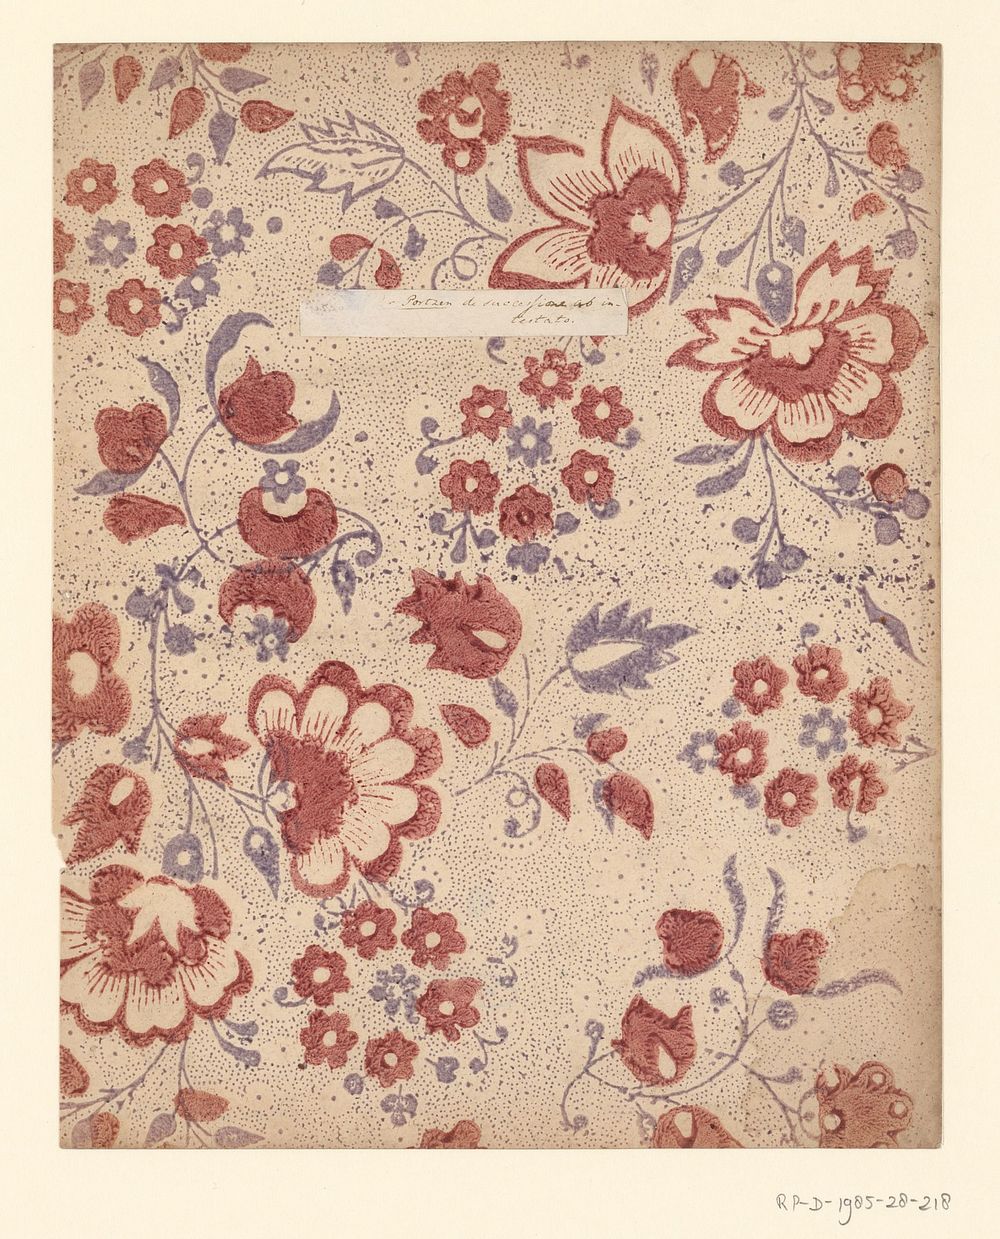 Blad met strooipatroon van bloemen en vruchten met puntenfond (1750 - 1900) by anonymous